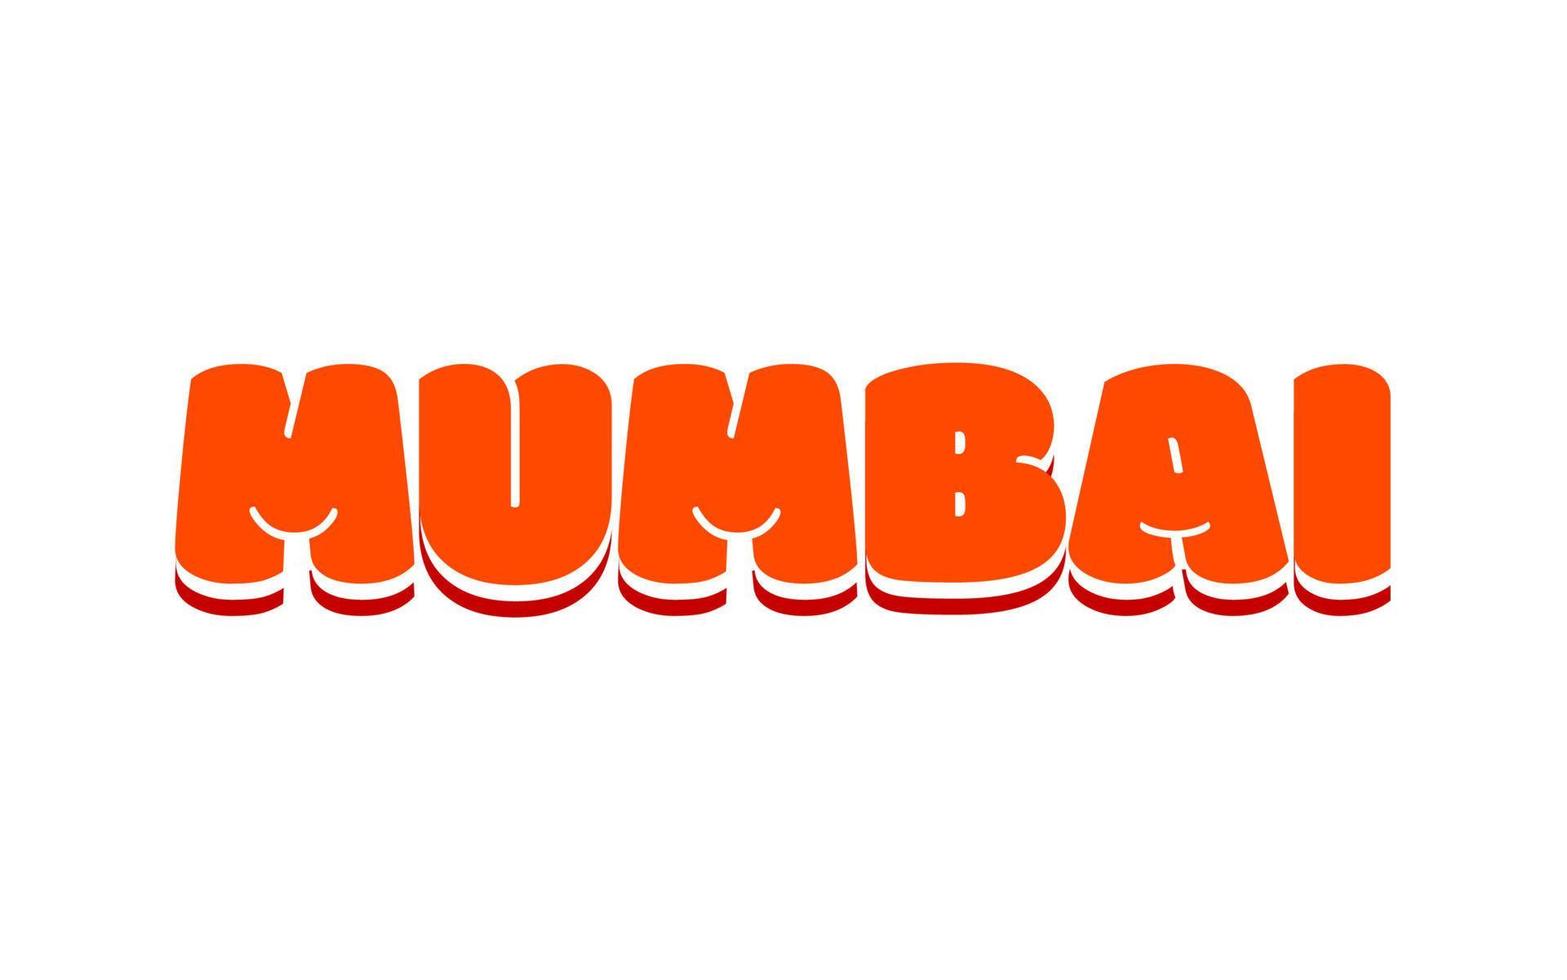 Mumbai in fetter Schrift mit oranger Farbe geschrieben. vektor